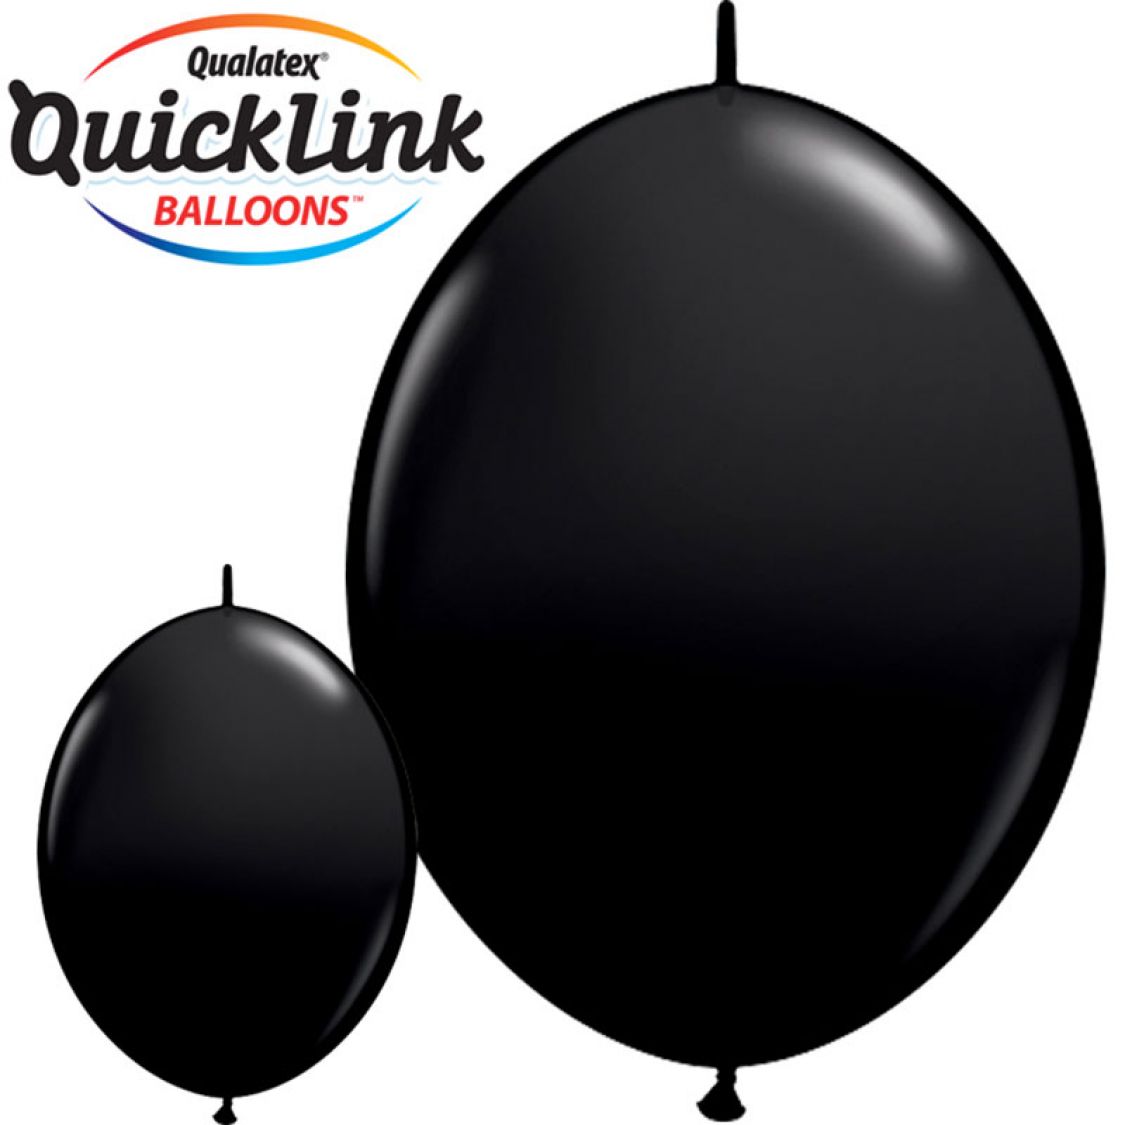 Ballon Quicklink Noir (Onyx Black)